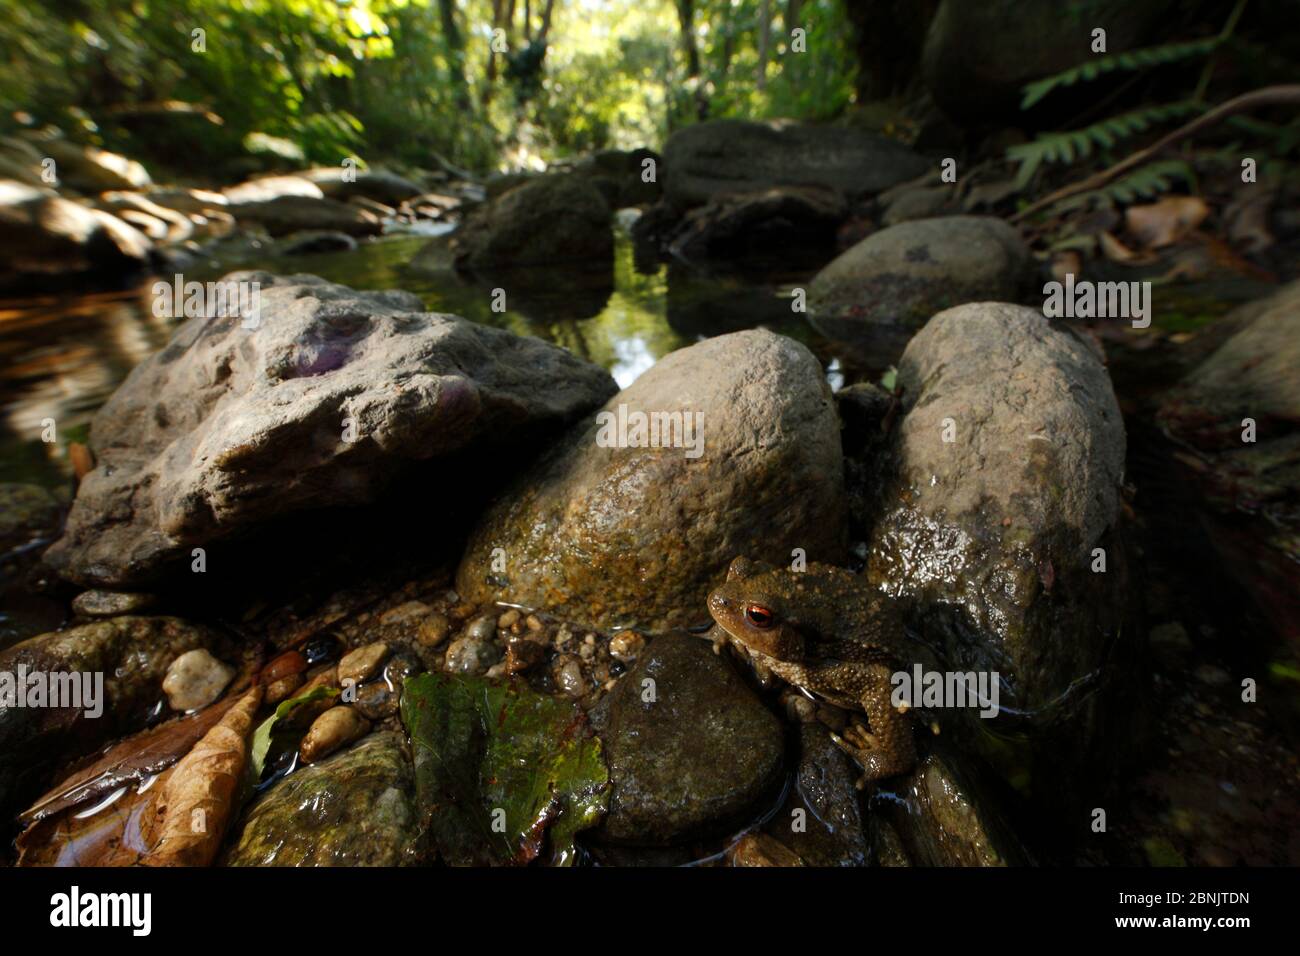 Crapaud européenne (Bufo bufo) dans la rivière Massane, montagnes Alberes, Pyrénées, France, septembre. Banque D'Images